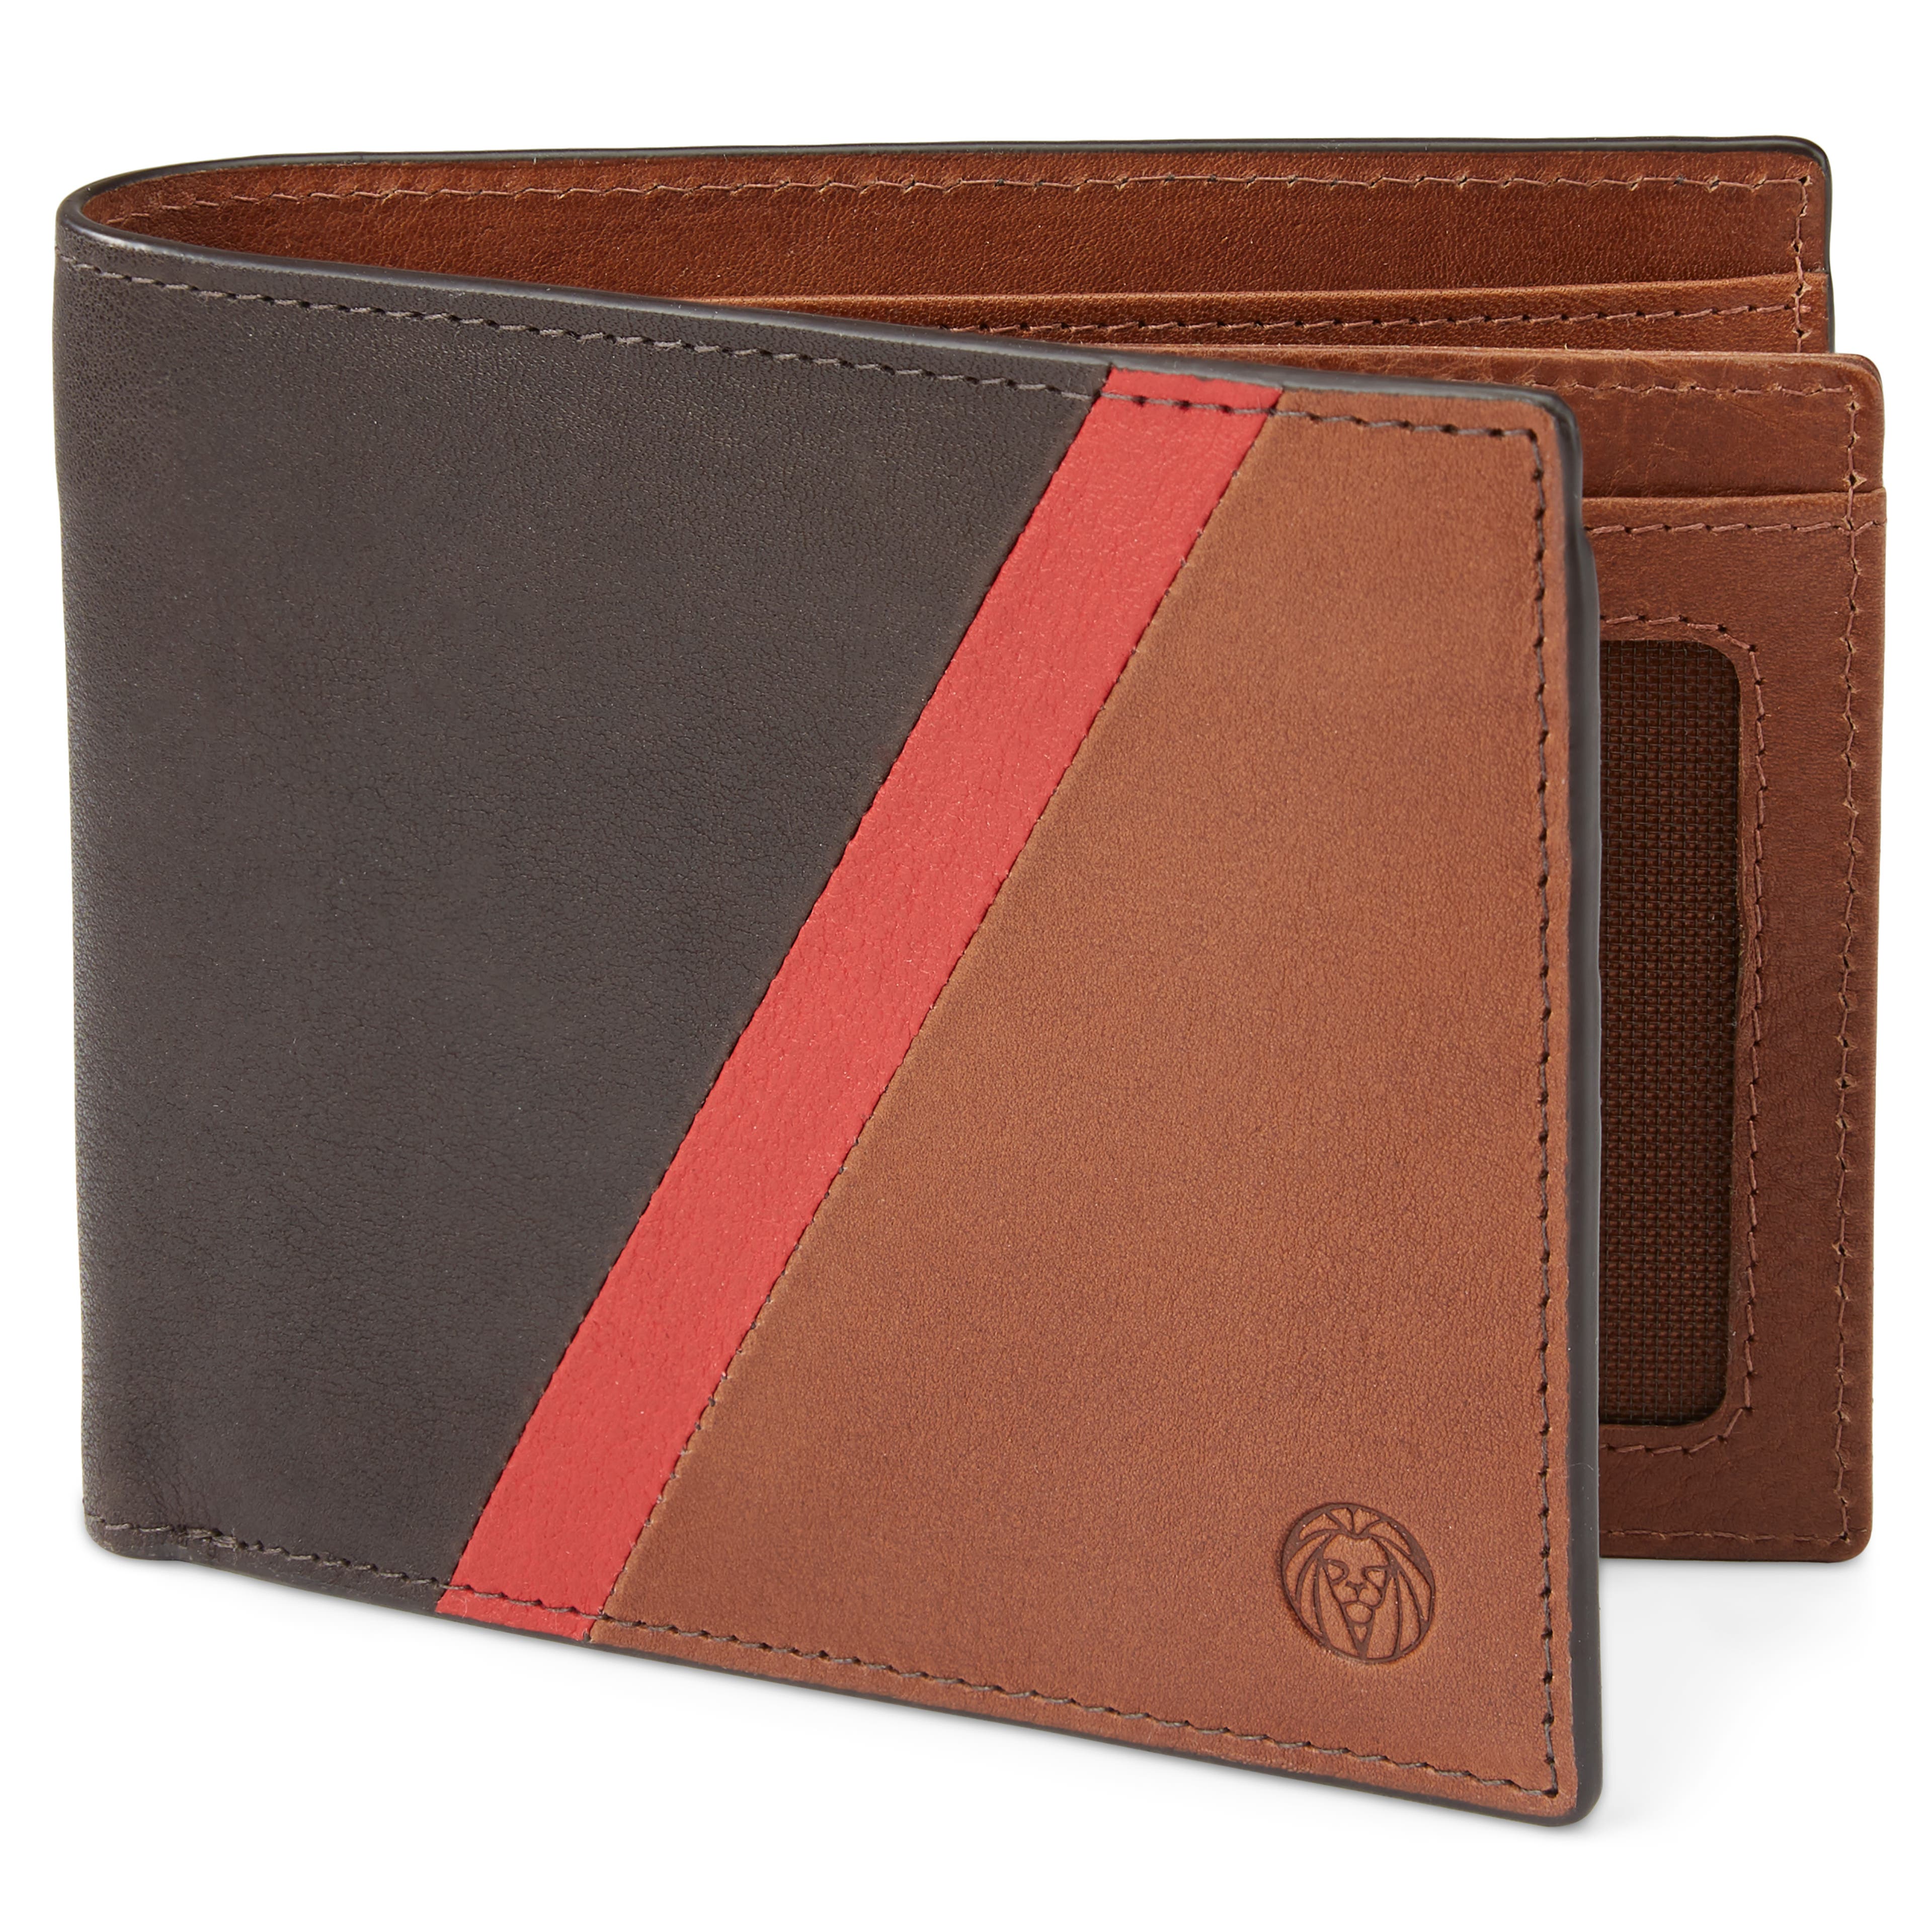 Lind světle hnědá kožená peněženka s červeným proužkem s blokováním RFID